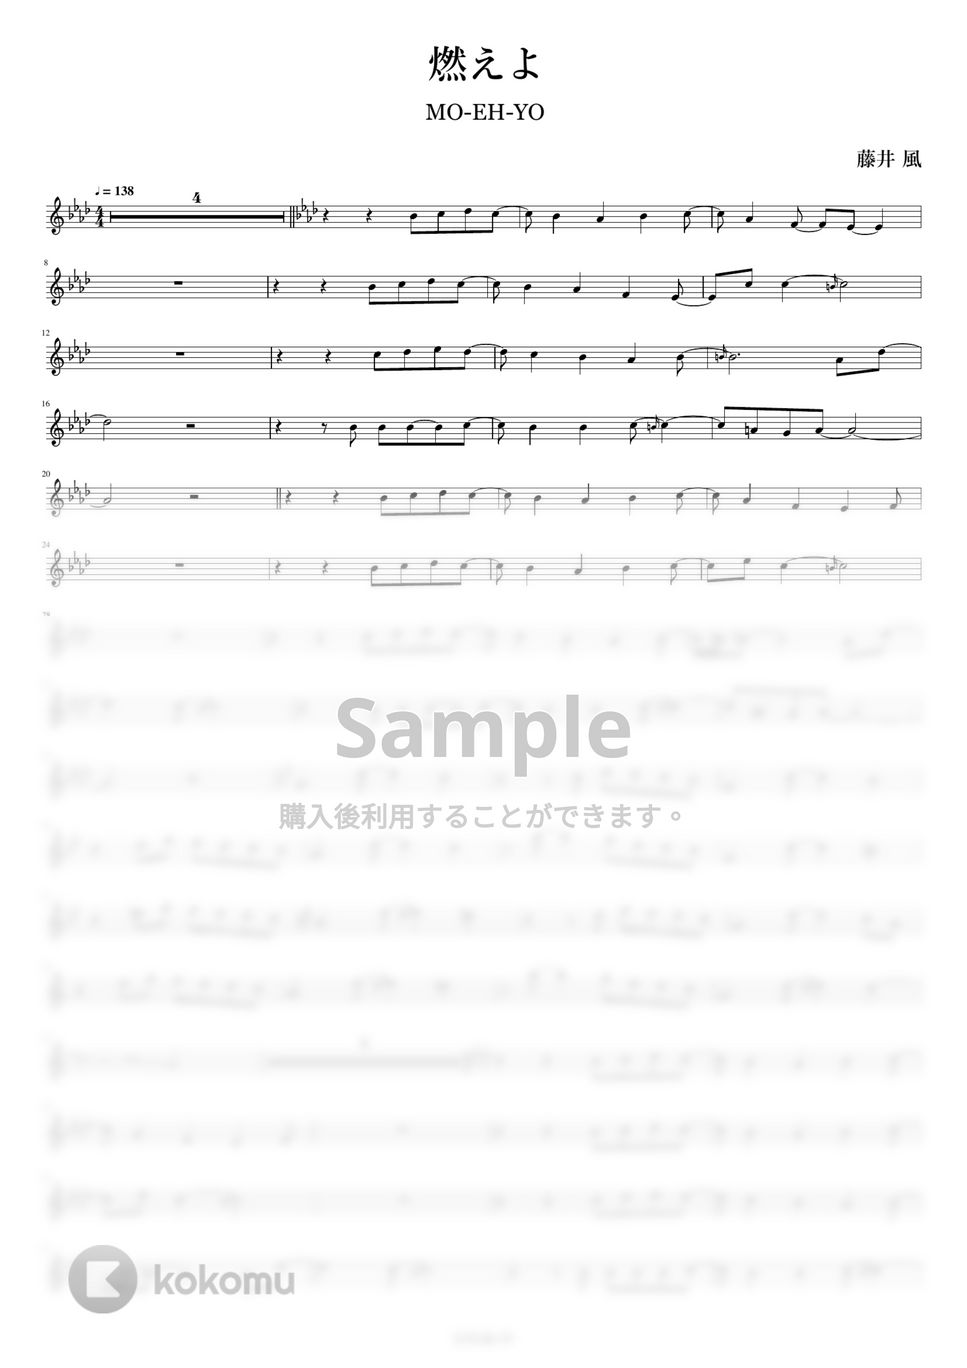 藤井風 - 燃えよ (フルート用メロディー譜(伴奏なし)) by もりたあいか